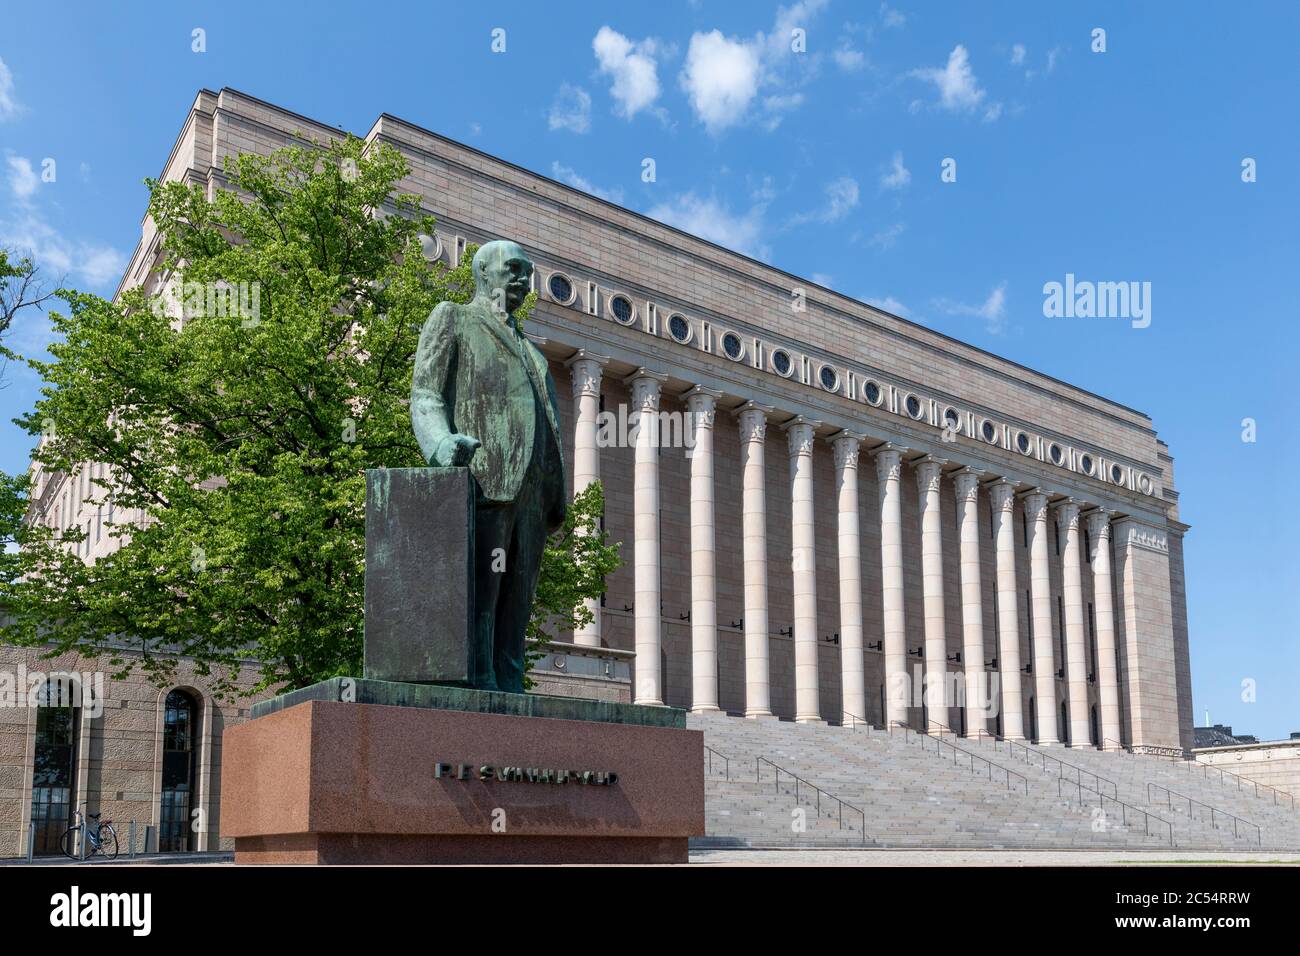 Statuen ehemaliger Präsidenten stehen um das finnische parlamentsgebäude herum. P.E.Svinhufvud hat sein Denkmal an der Süd-Ost Ecke des Gebäudes. Stockfoto